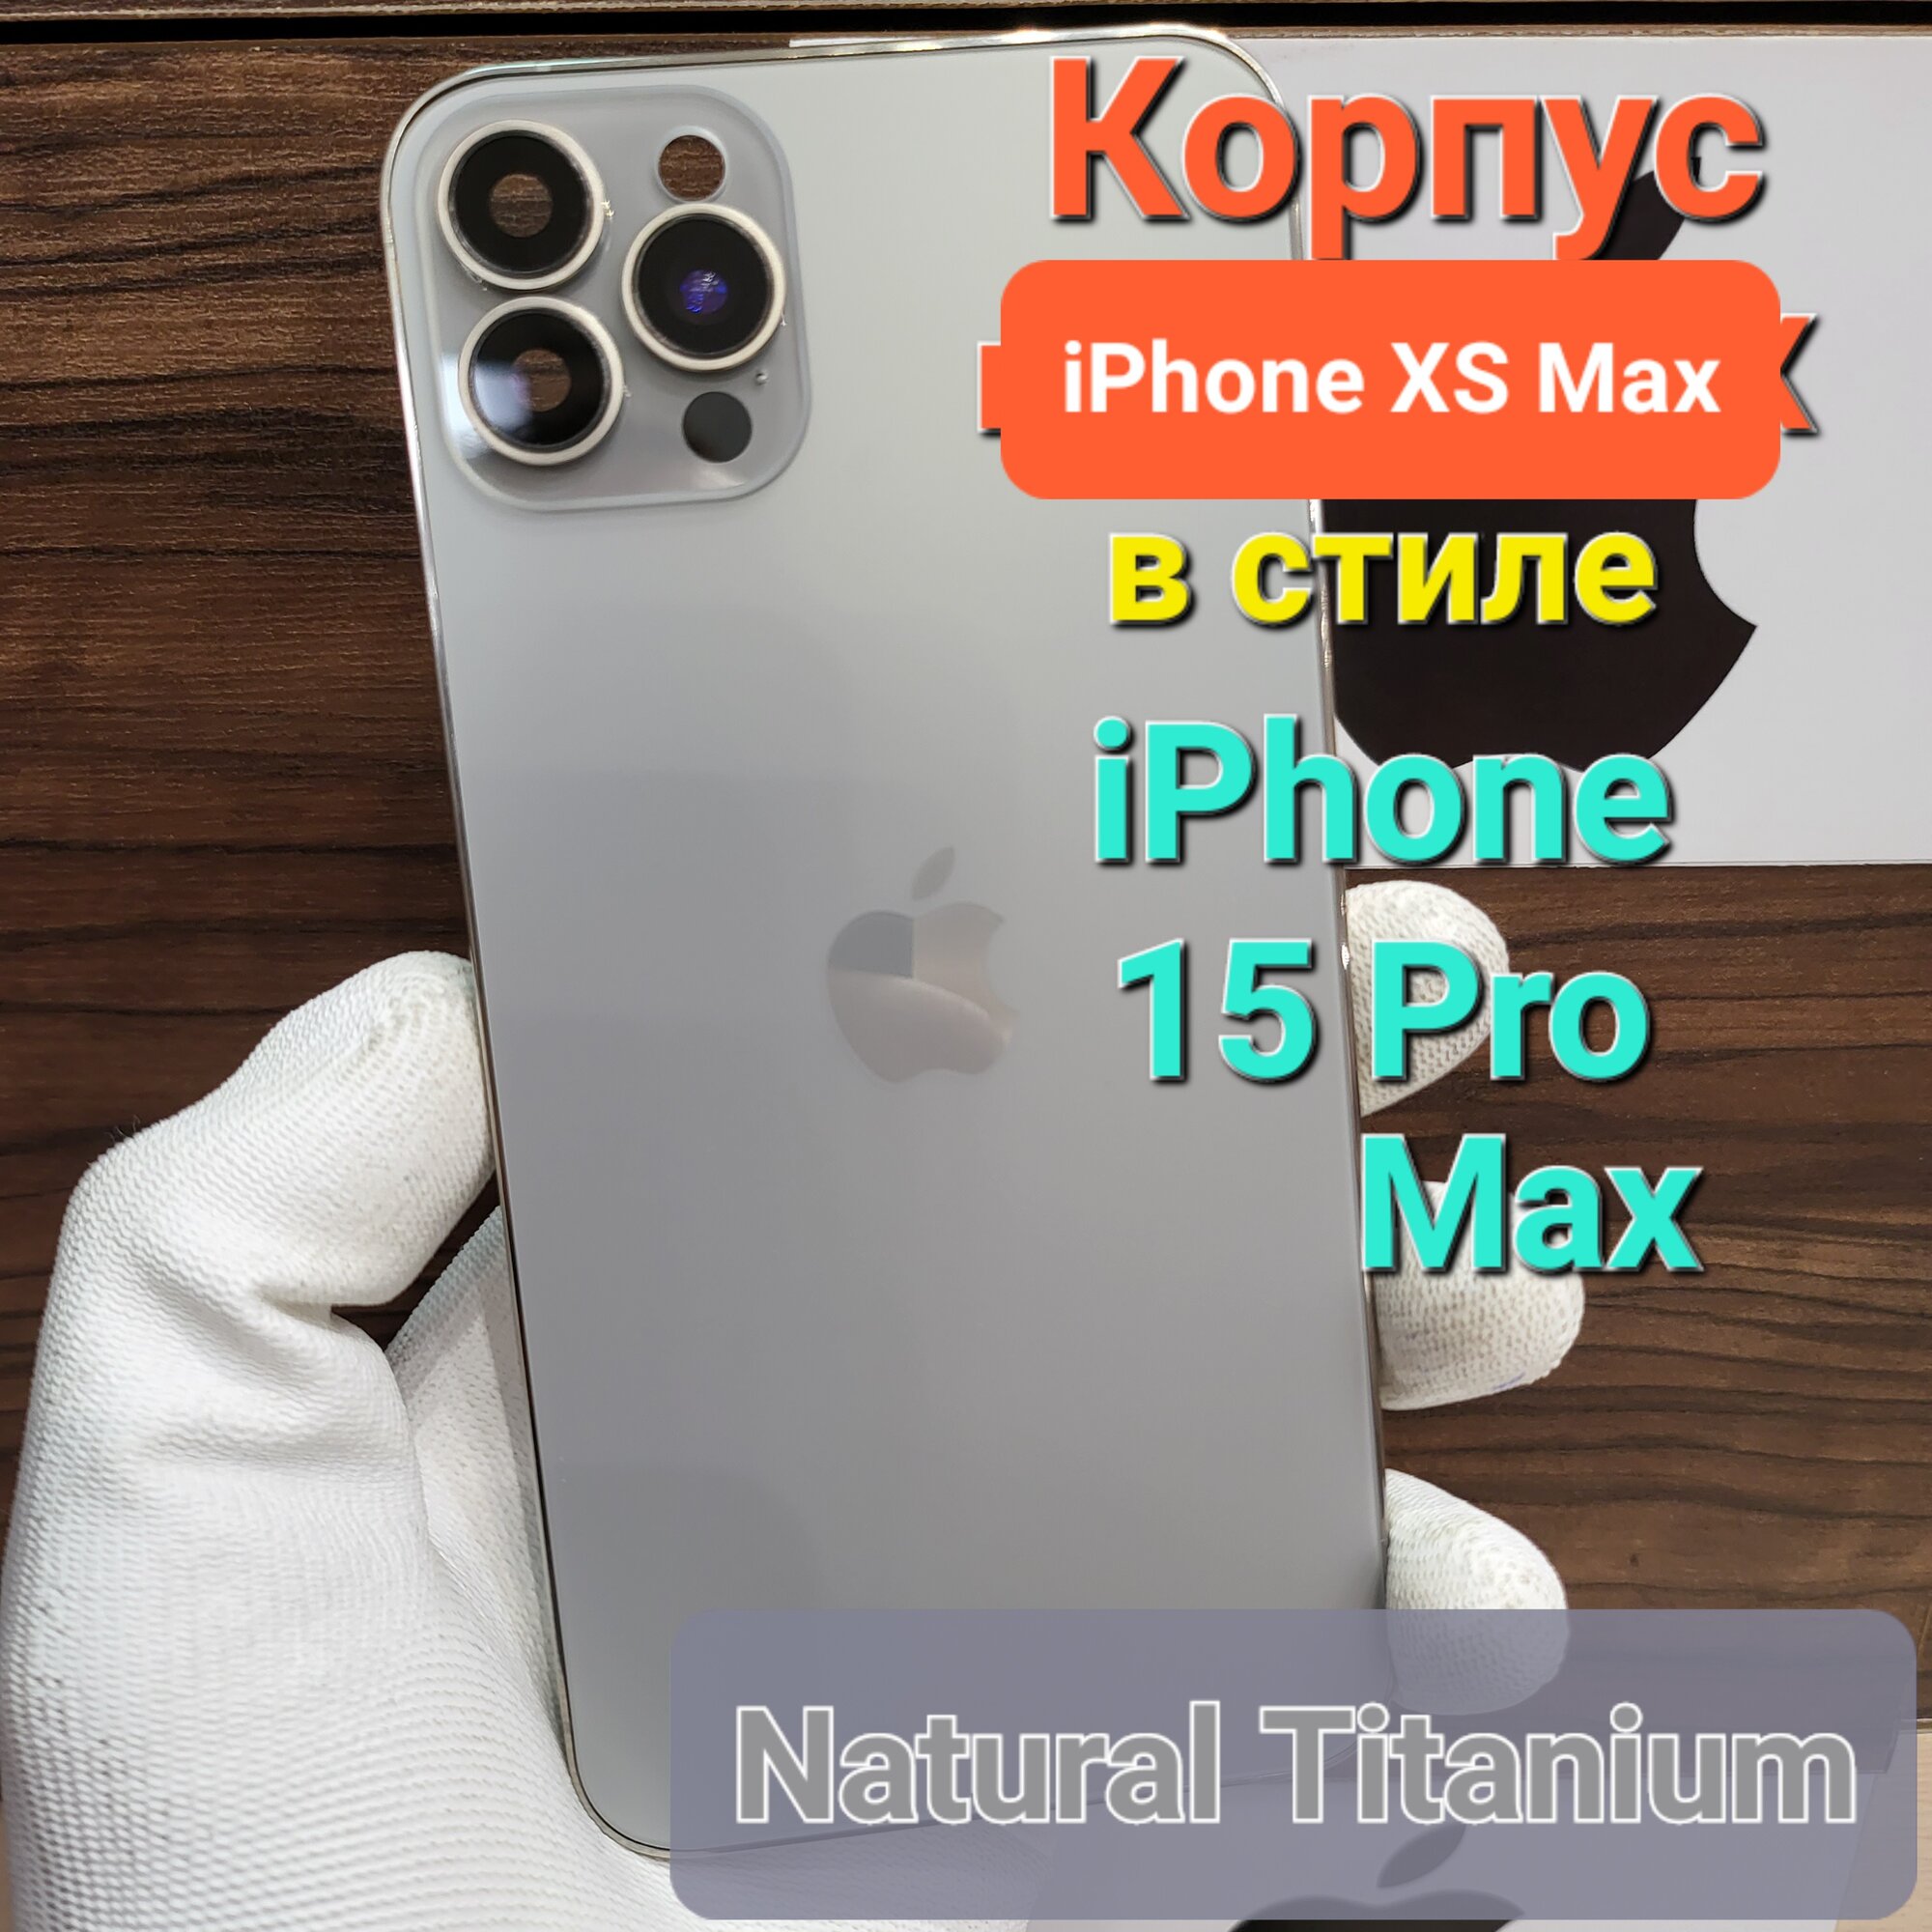 Корпус для iPhone XS Max в стиле iPhone 15Pro Max (цвет: Натуральный Титан)